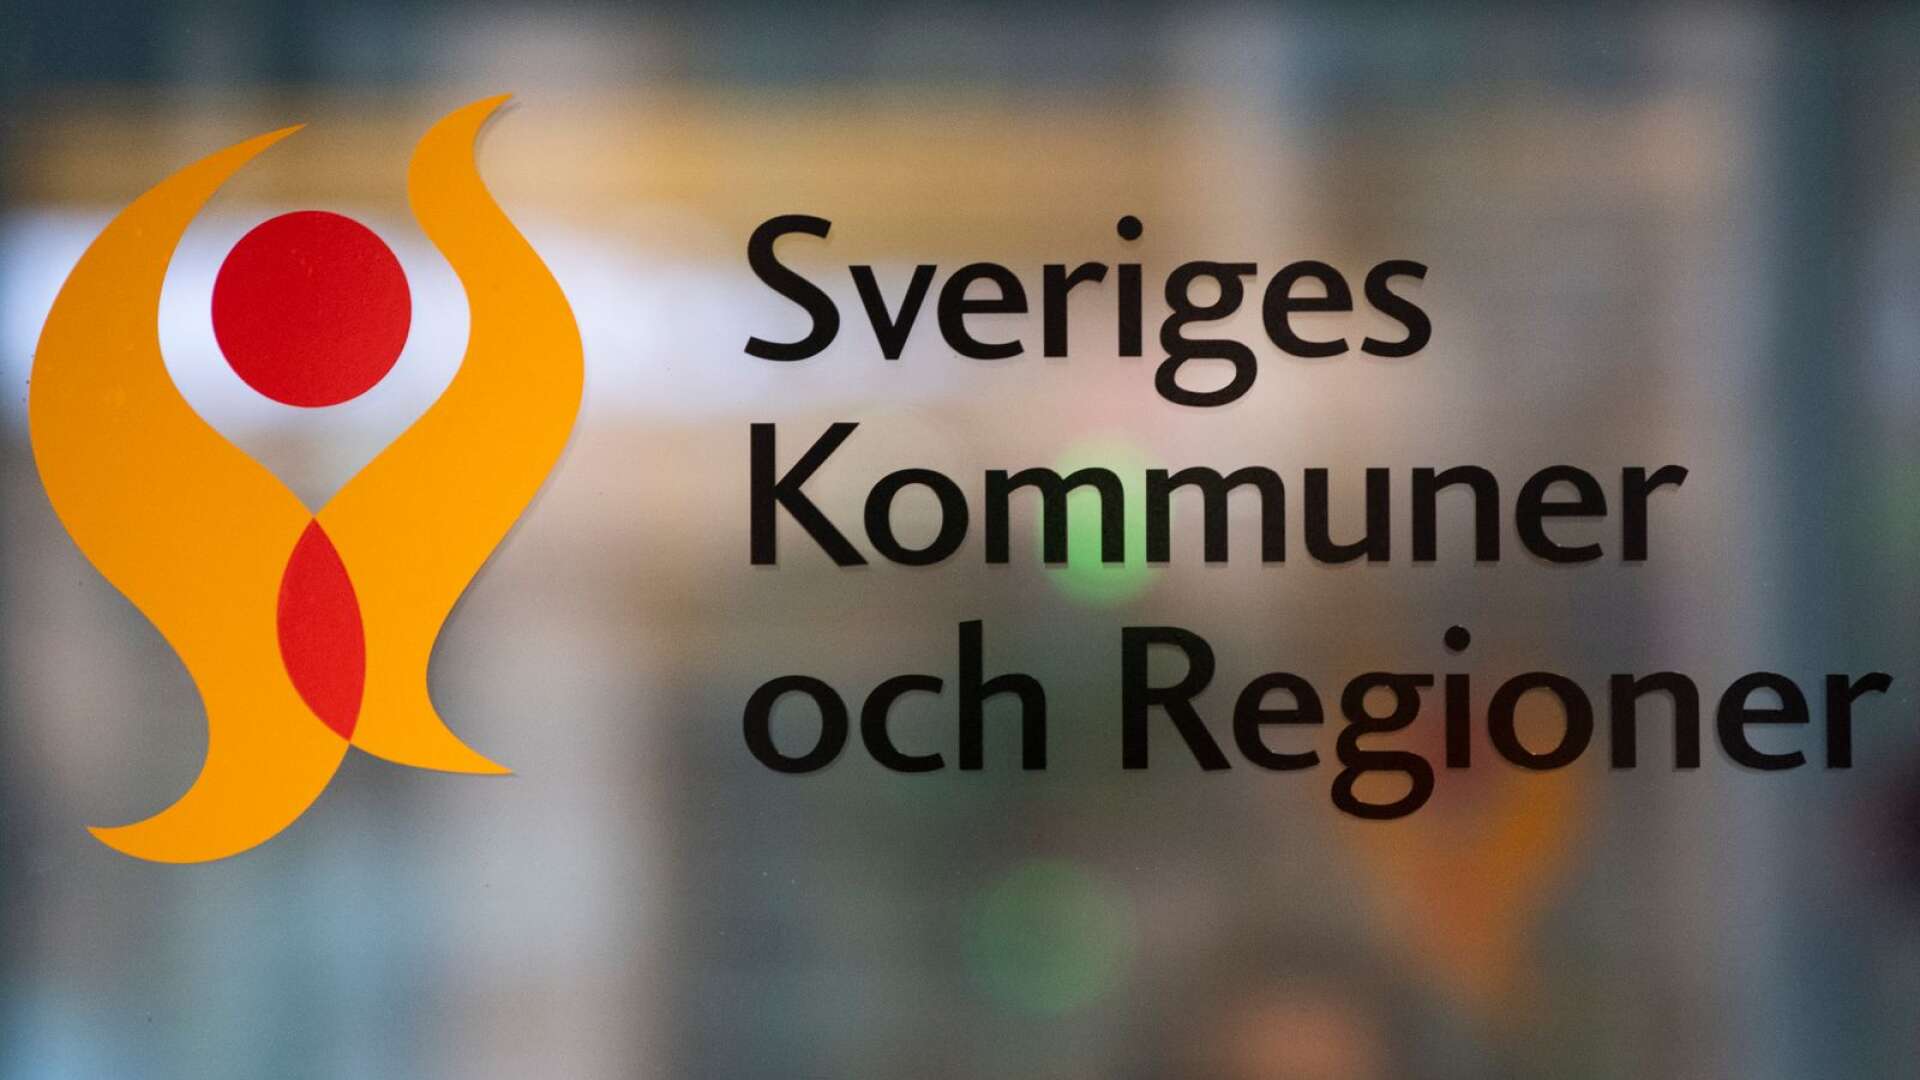 En annan märklig ”hybrid” är Sveriges Kommuner och Regioner (SKR), där ett stort antal myndigheter (kommuner) gått samman i ett samarbetsorgan, skriver Agne Sandberg.